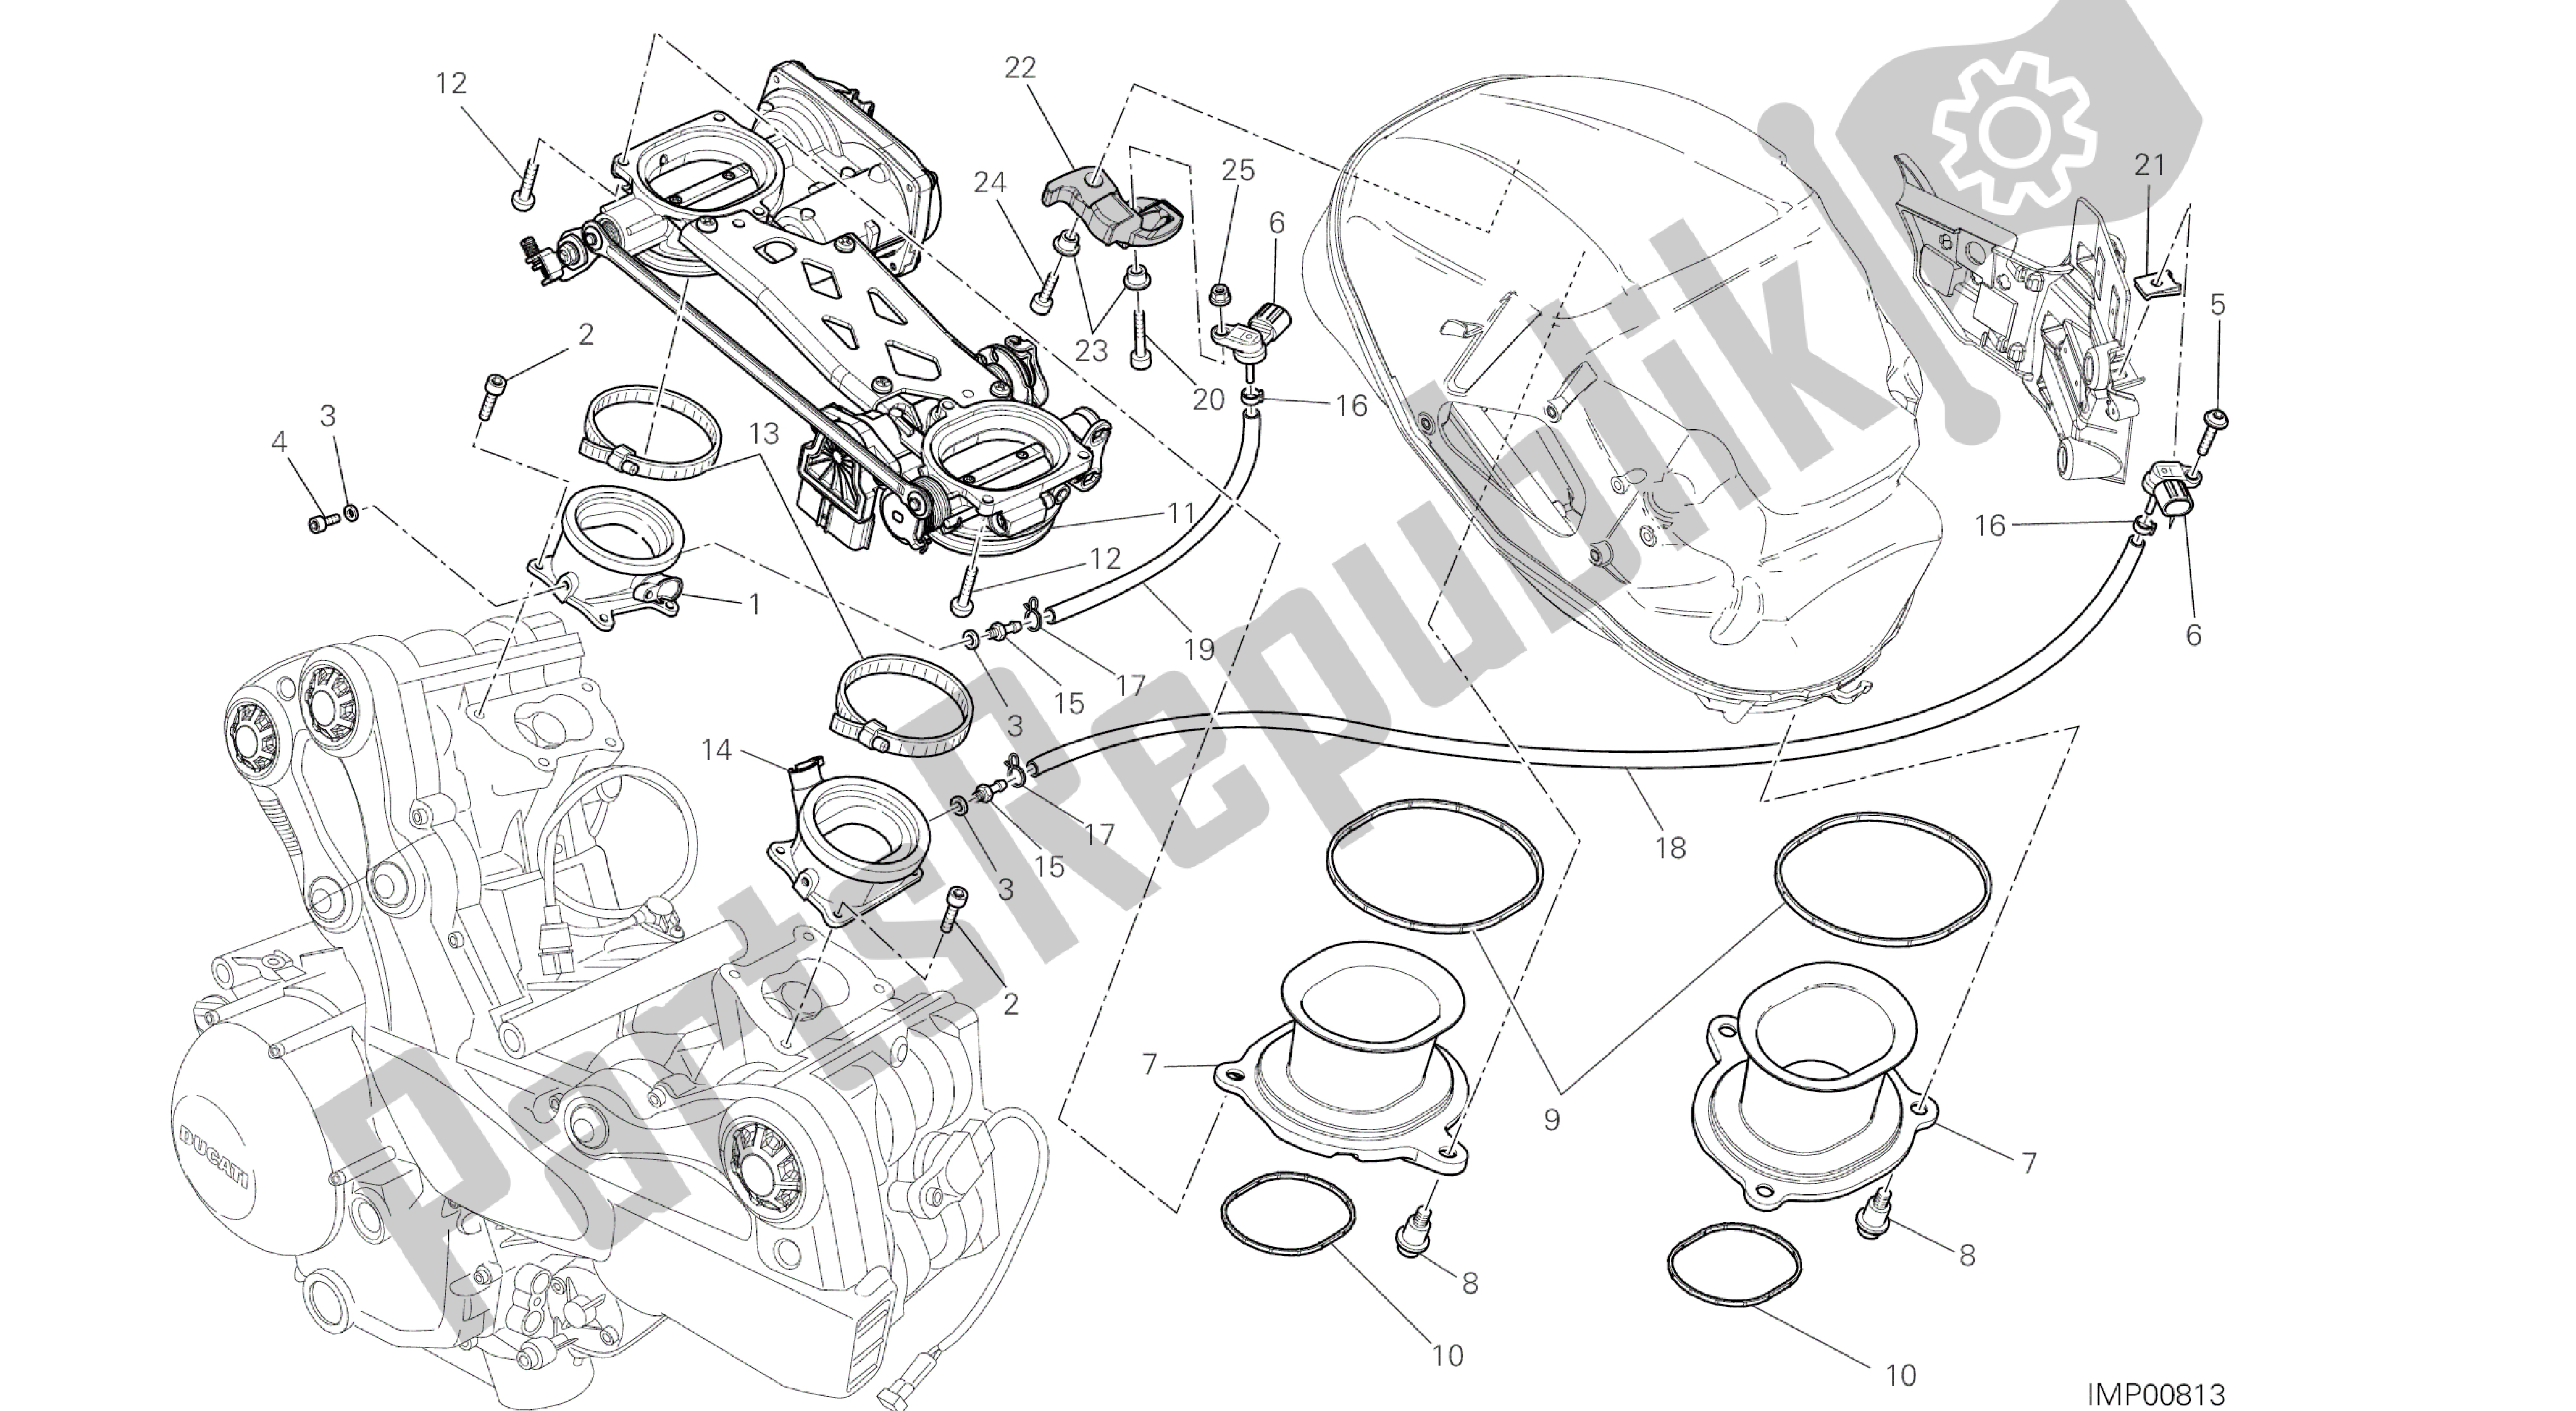 Toutes les pièces pour le Dessin 017 - Corps De Papillon [mod: Ms1200st; Xst: Aus, Eur, Fra, Jap] Groupe Moteur du Ducati Multistrada S Touring 1200 2014